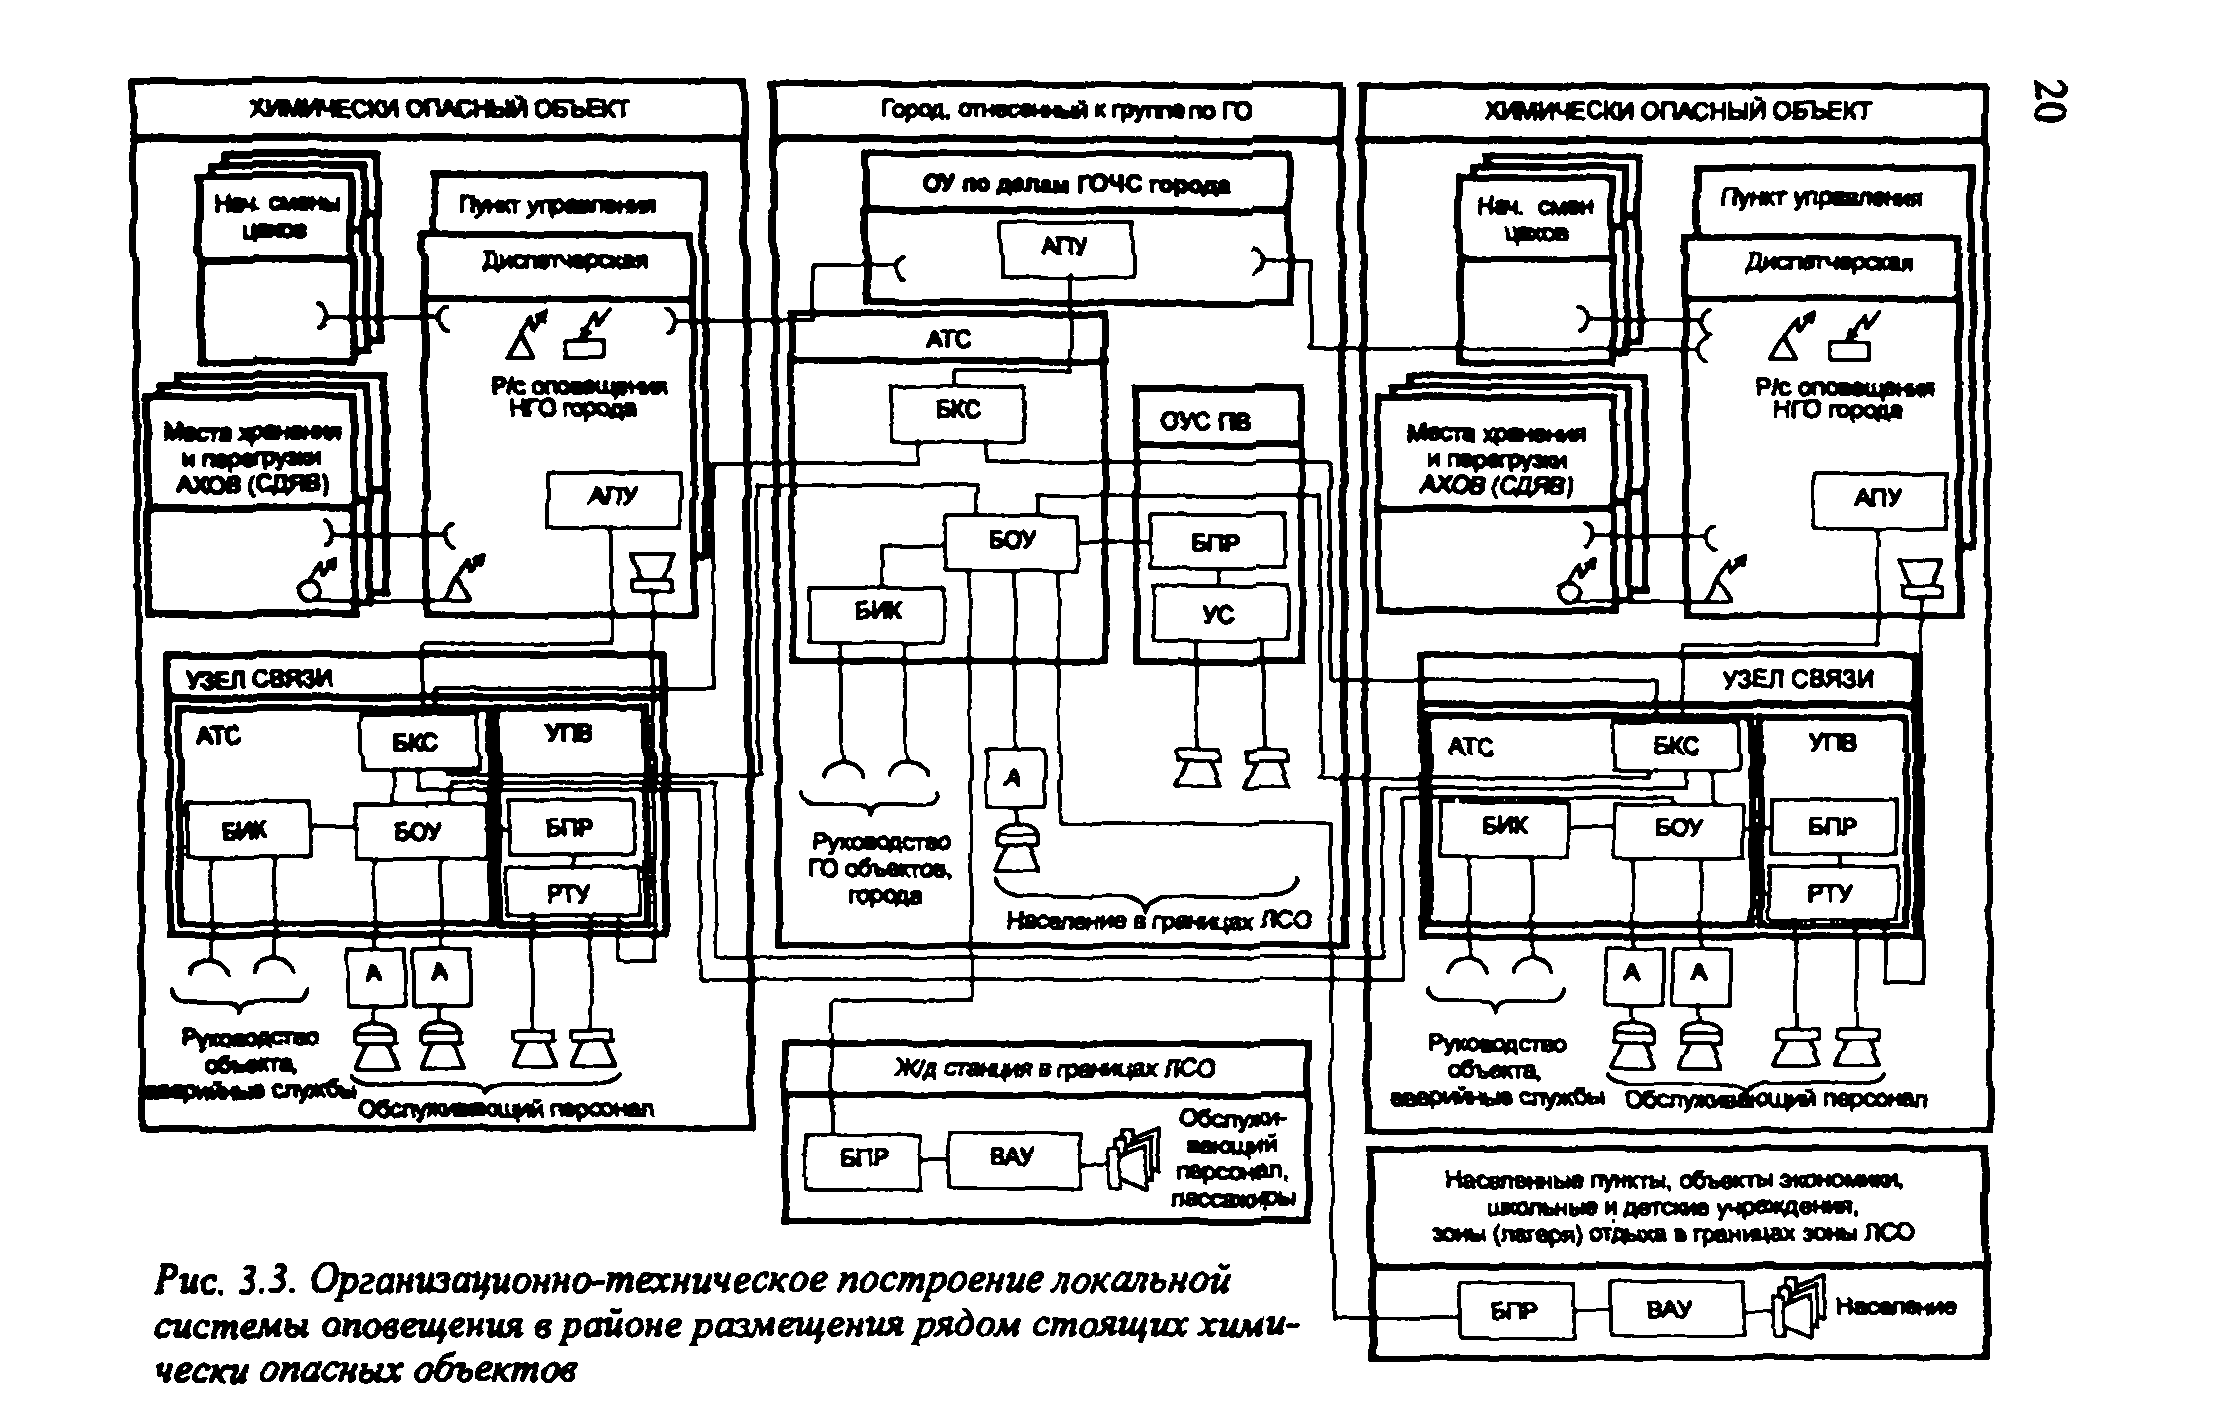 Система лсо. Схема организационно-технического построения системы оповещения. П-166 Буу-02 схема. Система оповещения п-166м структура. Проектирование систем оповещения.